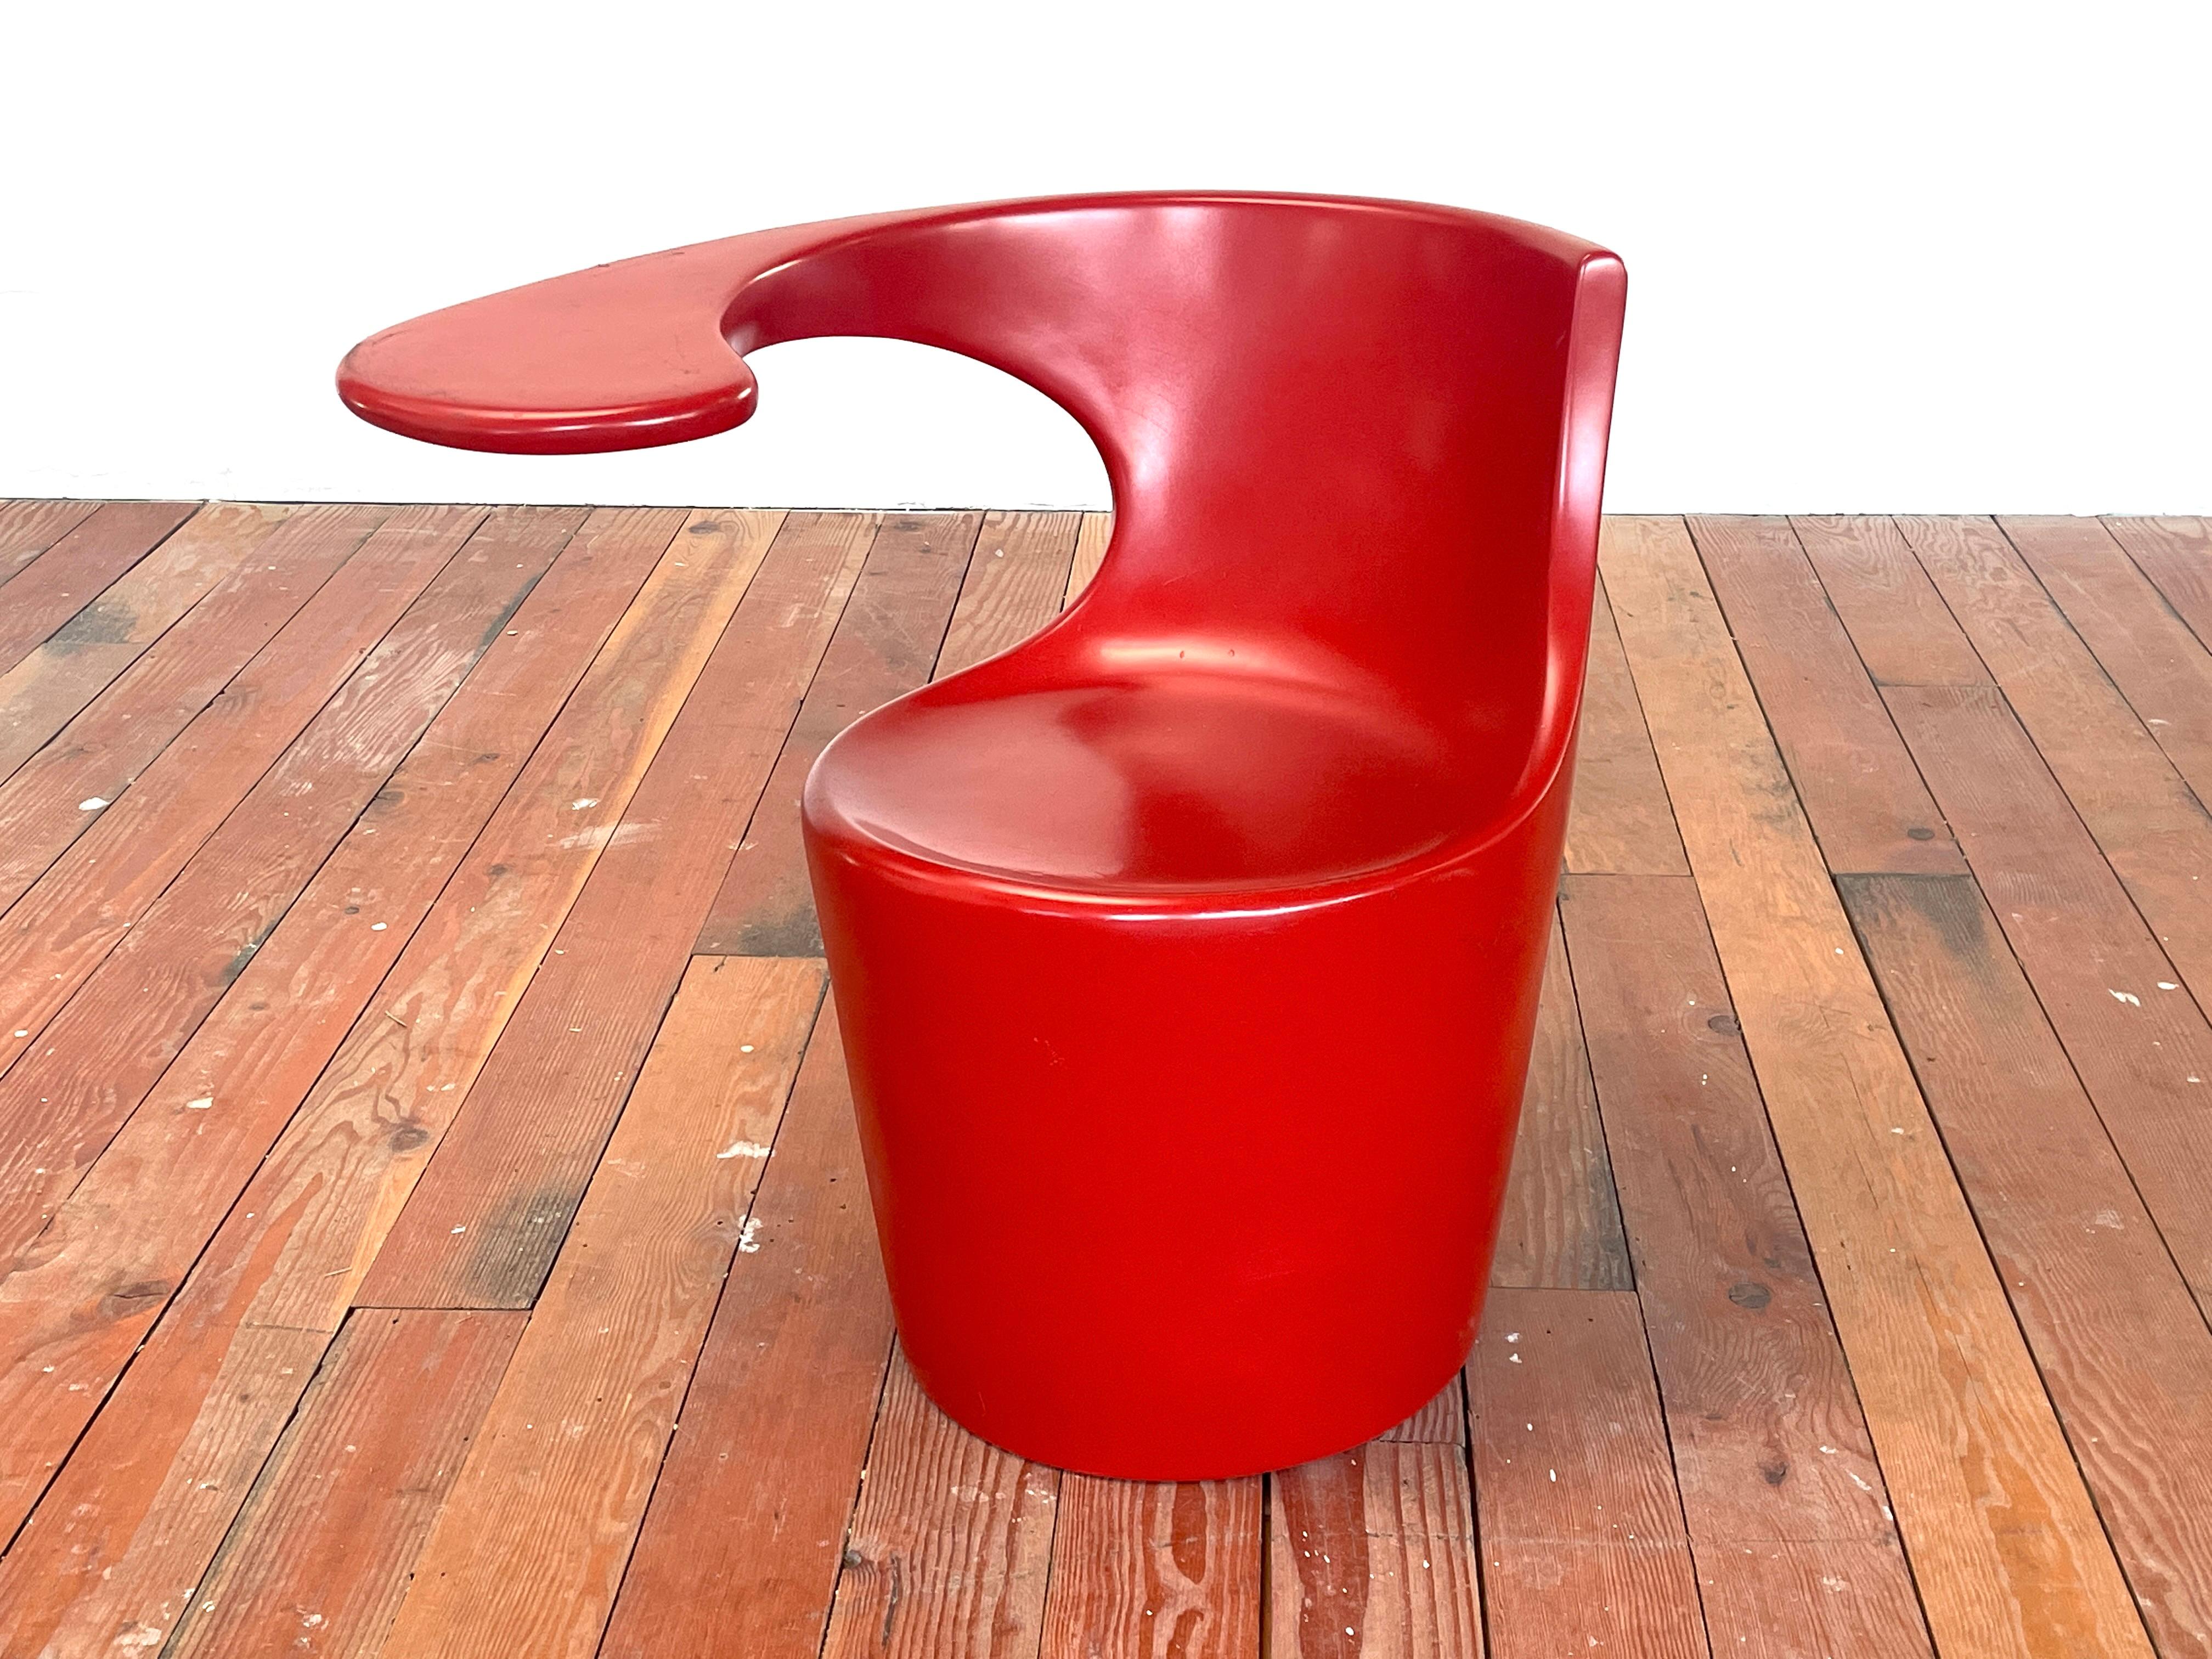 Skulpturaler Sessel Divina mit Tischplatte von J. B. für Felicerossi, Italien, Entwurf 2002 n Italien 
Original rote Farbe mit Tischplatte als Teil der ergonomischen Form. 
Hergestellt aus Polyethylen - geeignet für innen und außen



